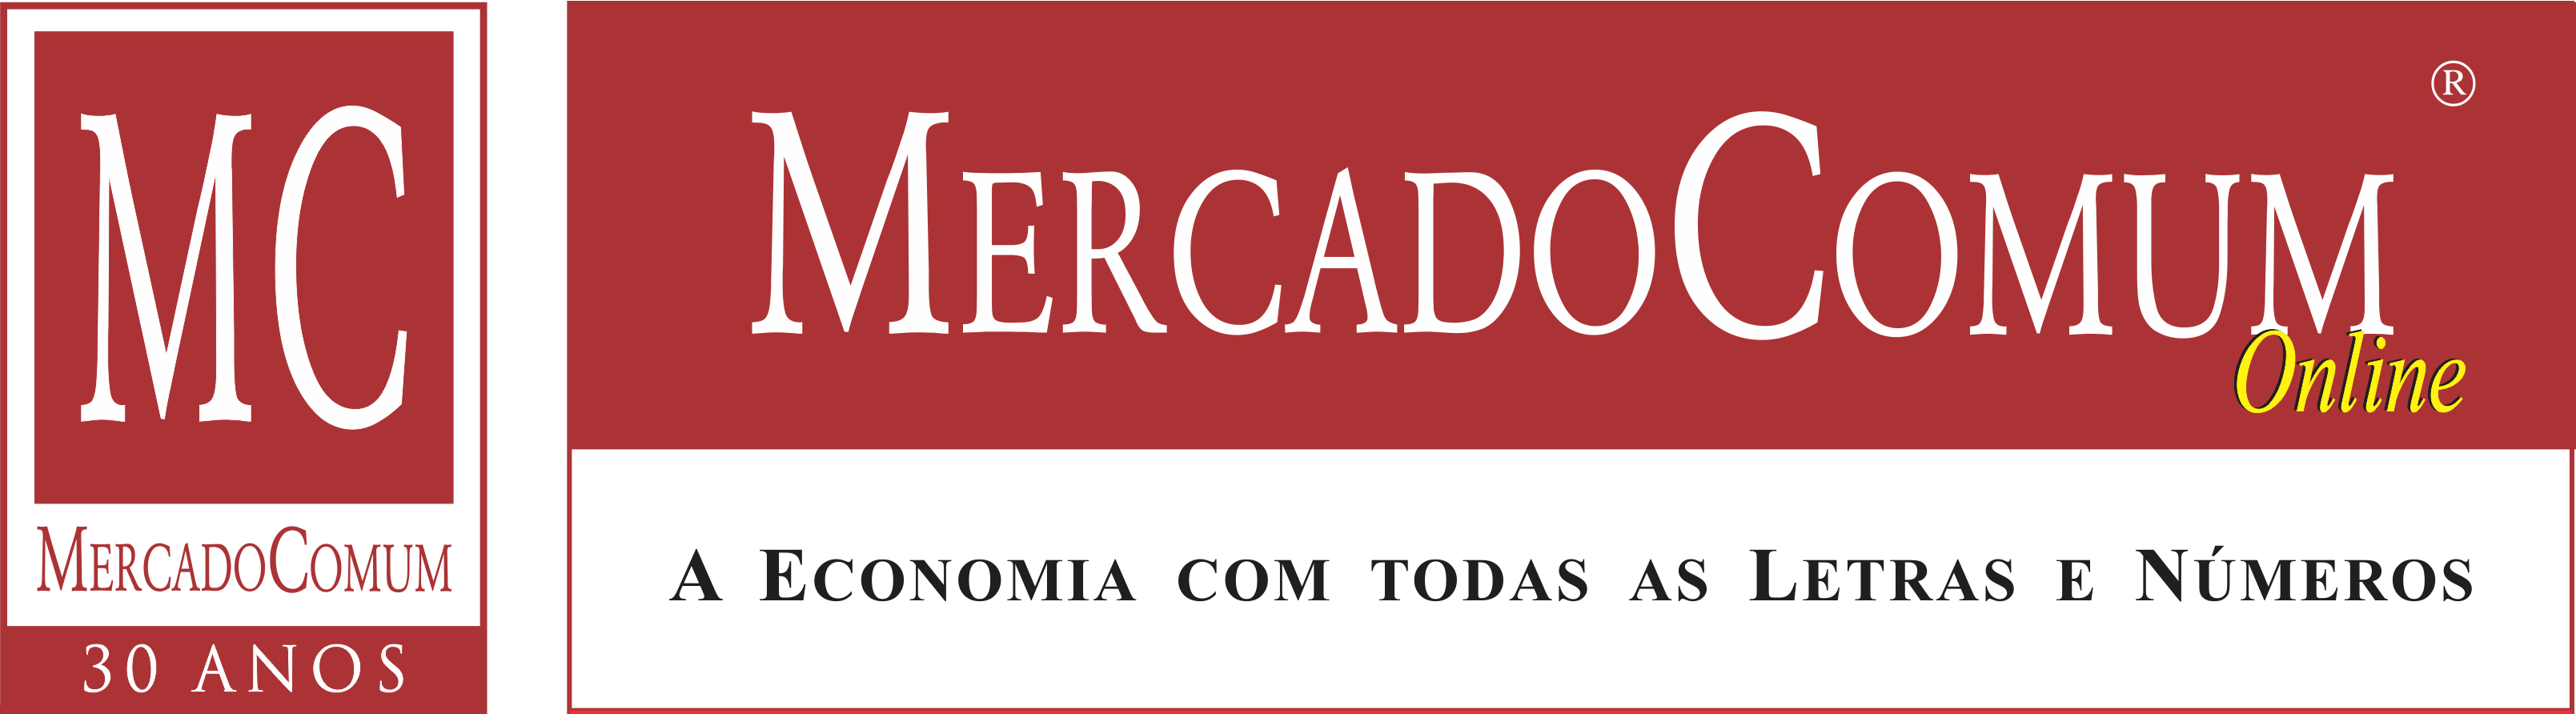 Jorge Carneiro assume a presidência do grupo SAGE no Brasil - Mercado  Comum: Jornal on-line BH - Cultura - Economia - Política e Variedades